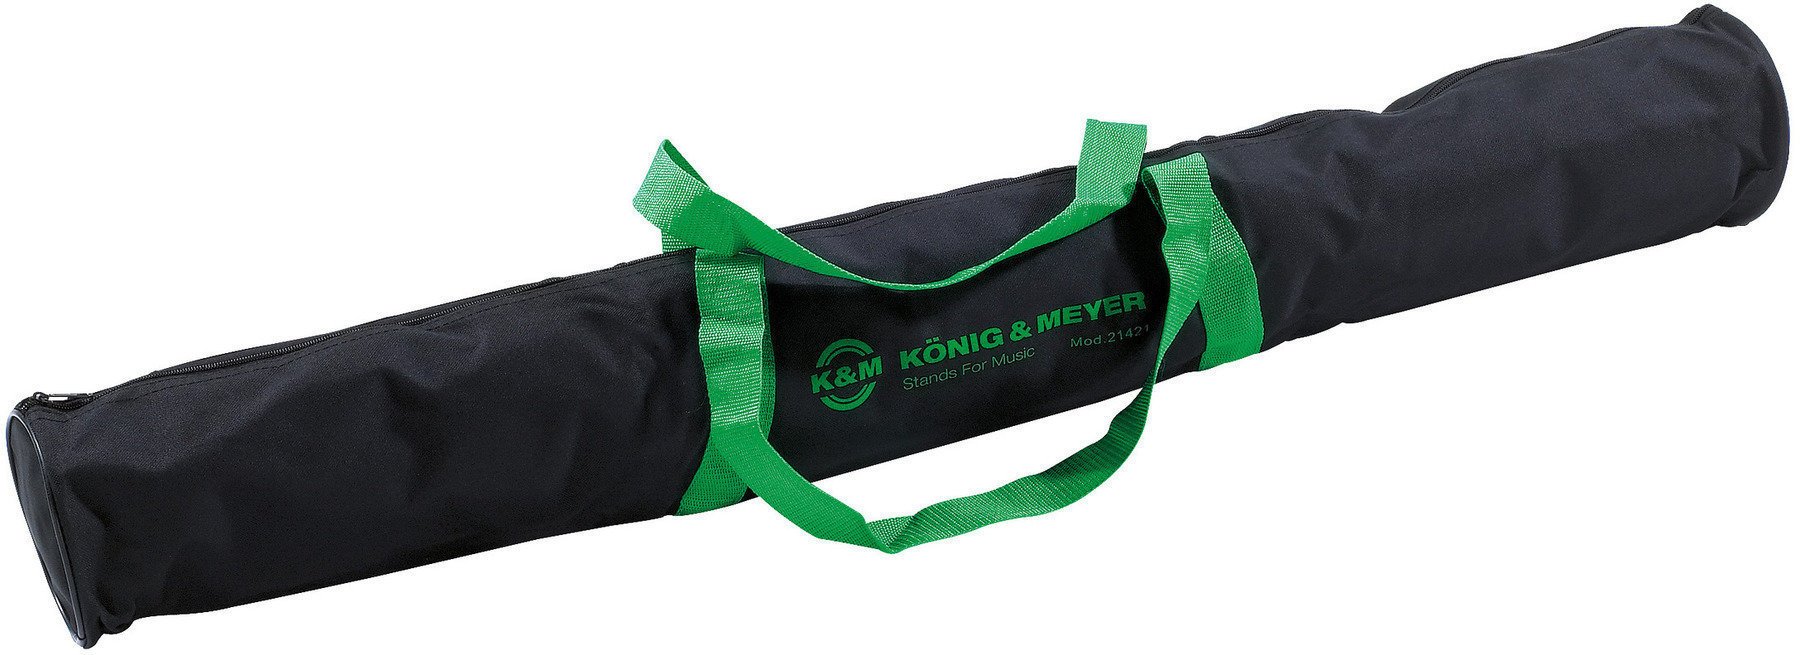 Zaščitna embalaža Konig & Meyer 21421 Zaščitna embalaža